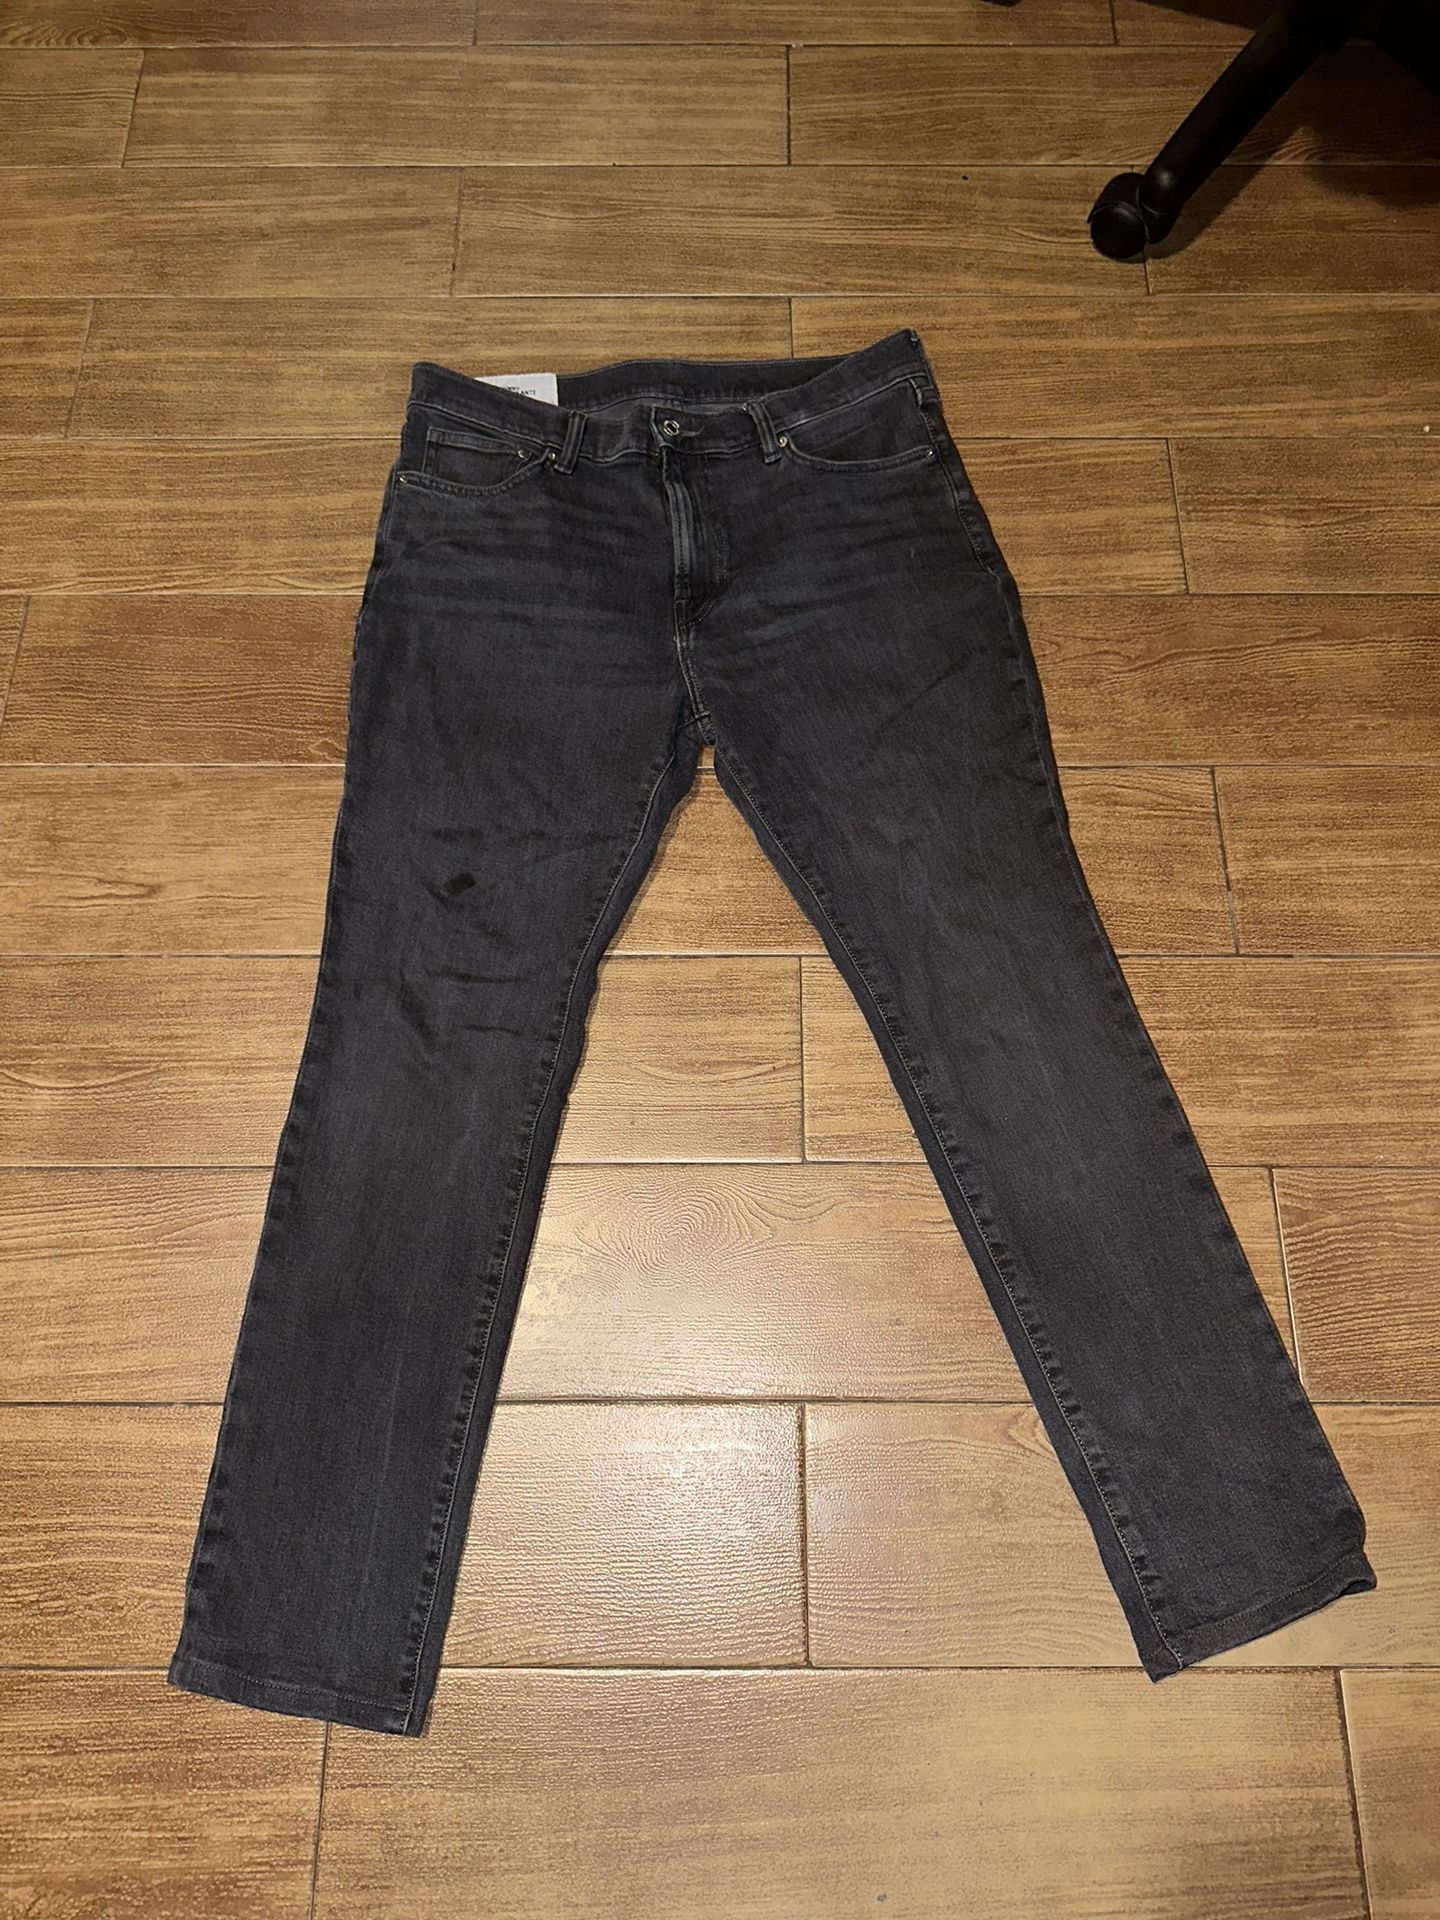 H&M Jeans Dark Men Size 34x30 Skinny 